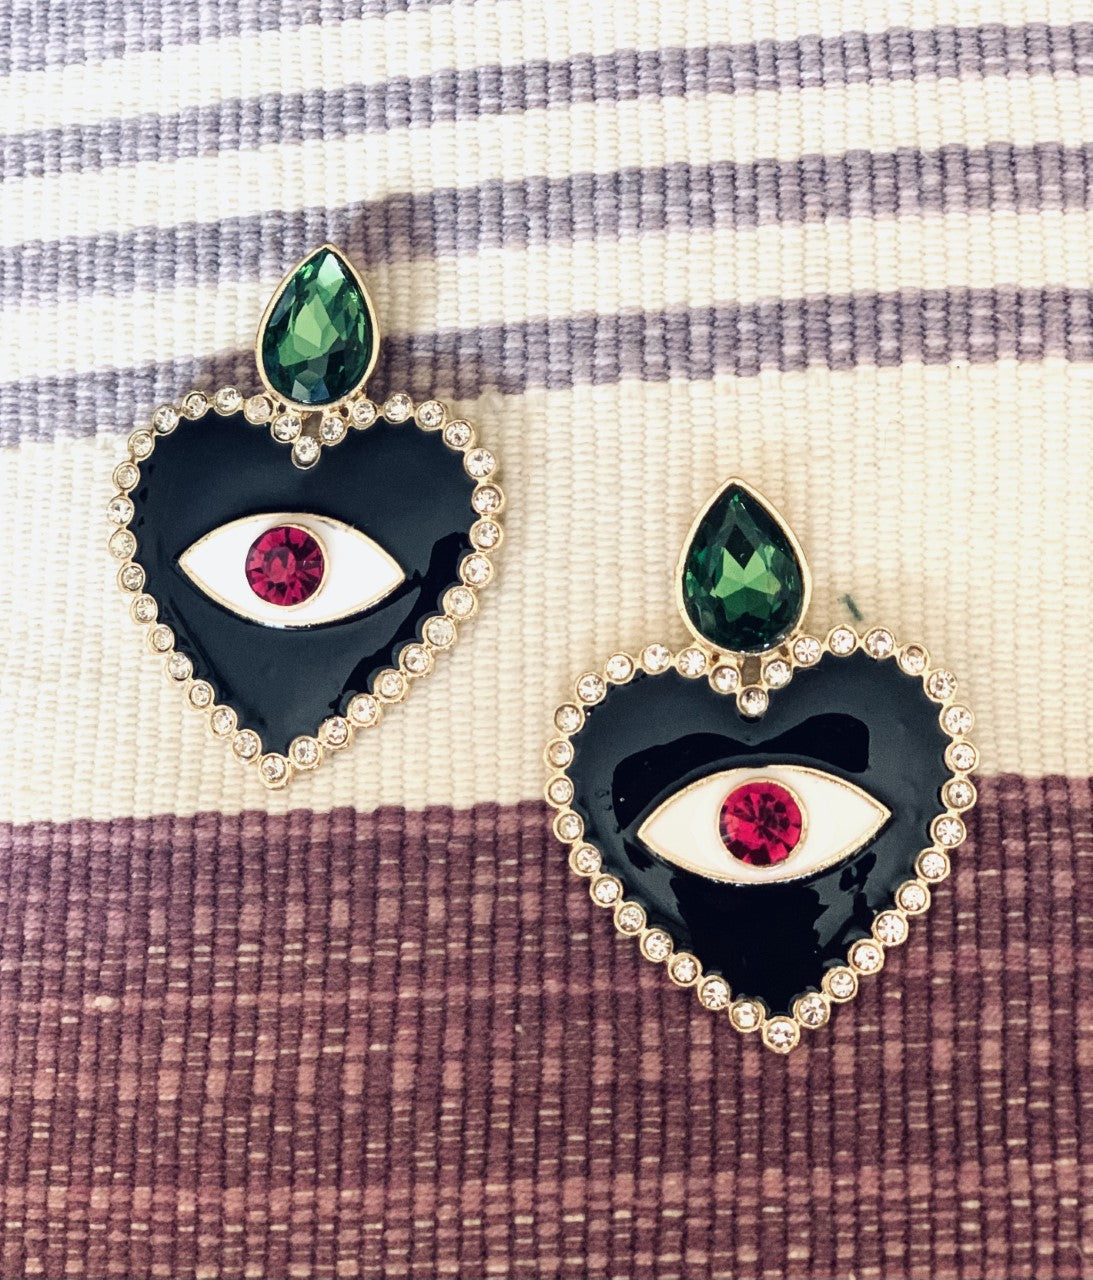 Sacred heart earrings